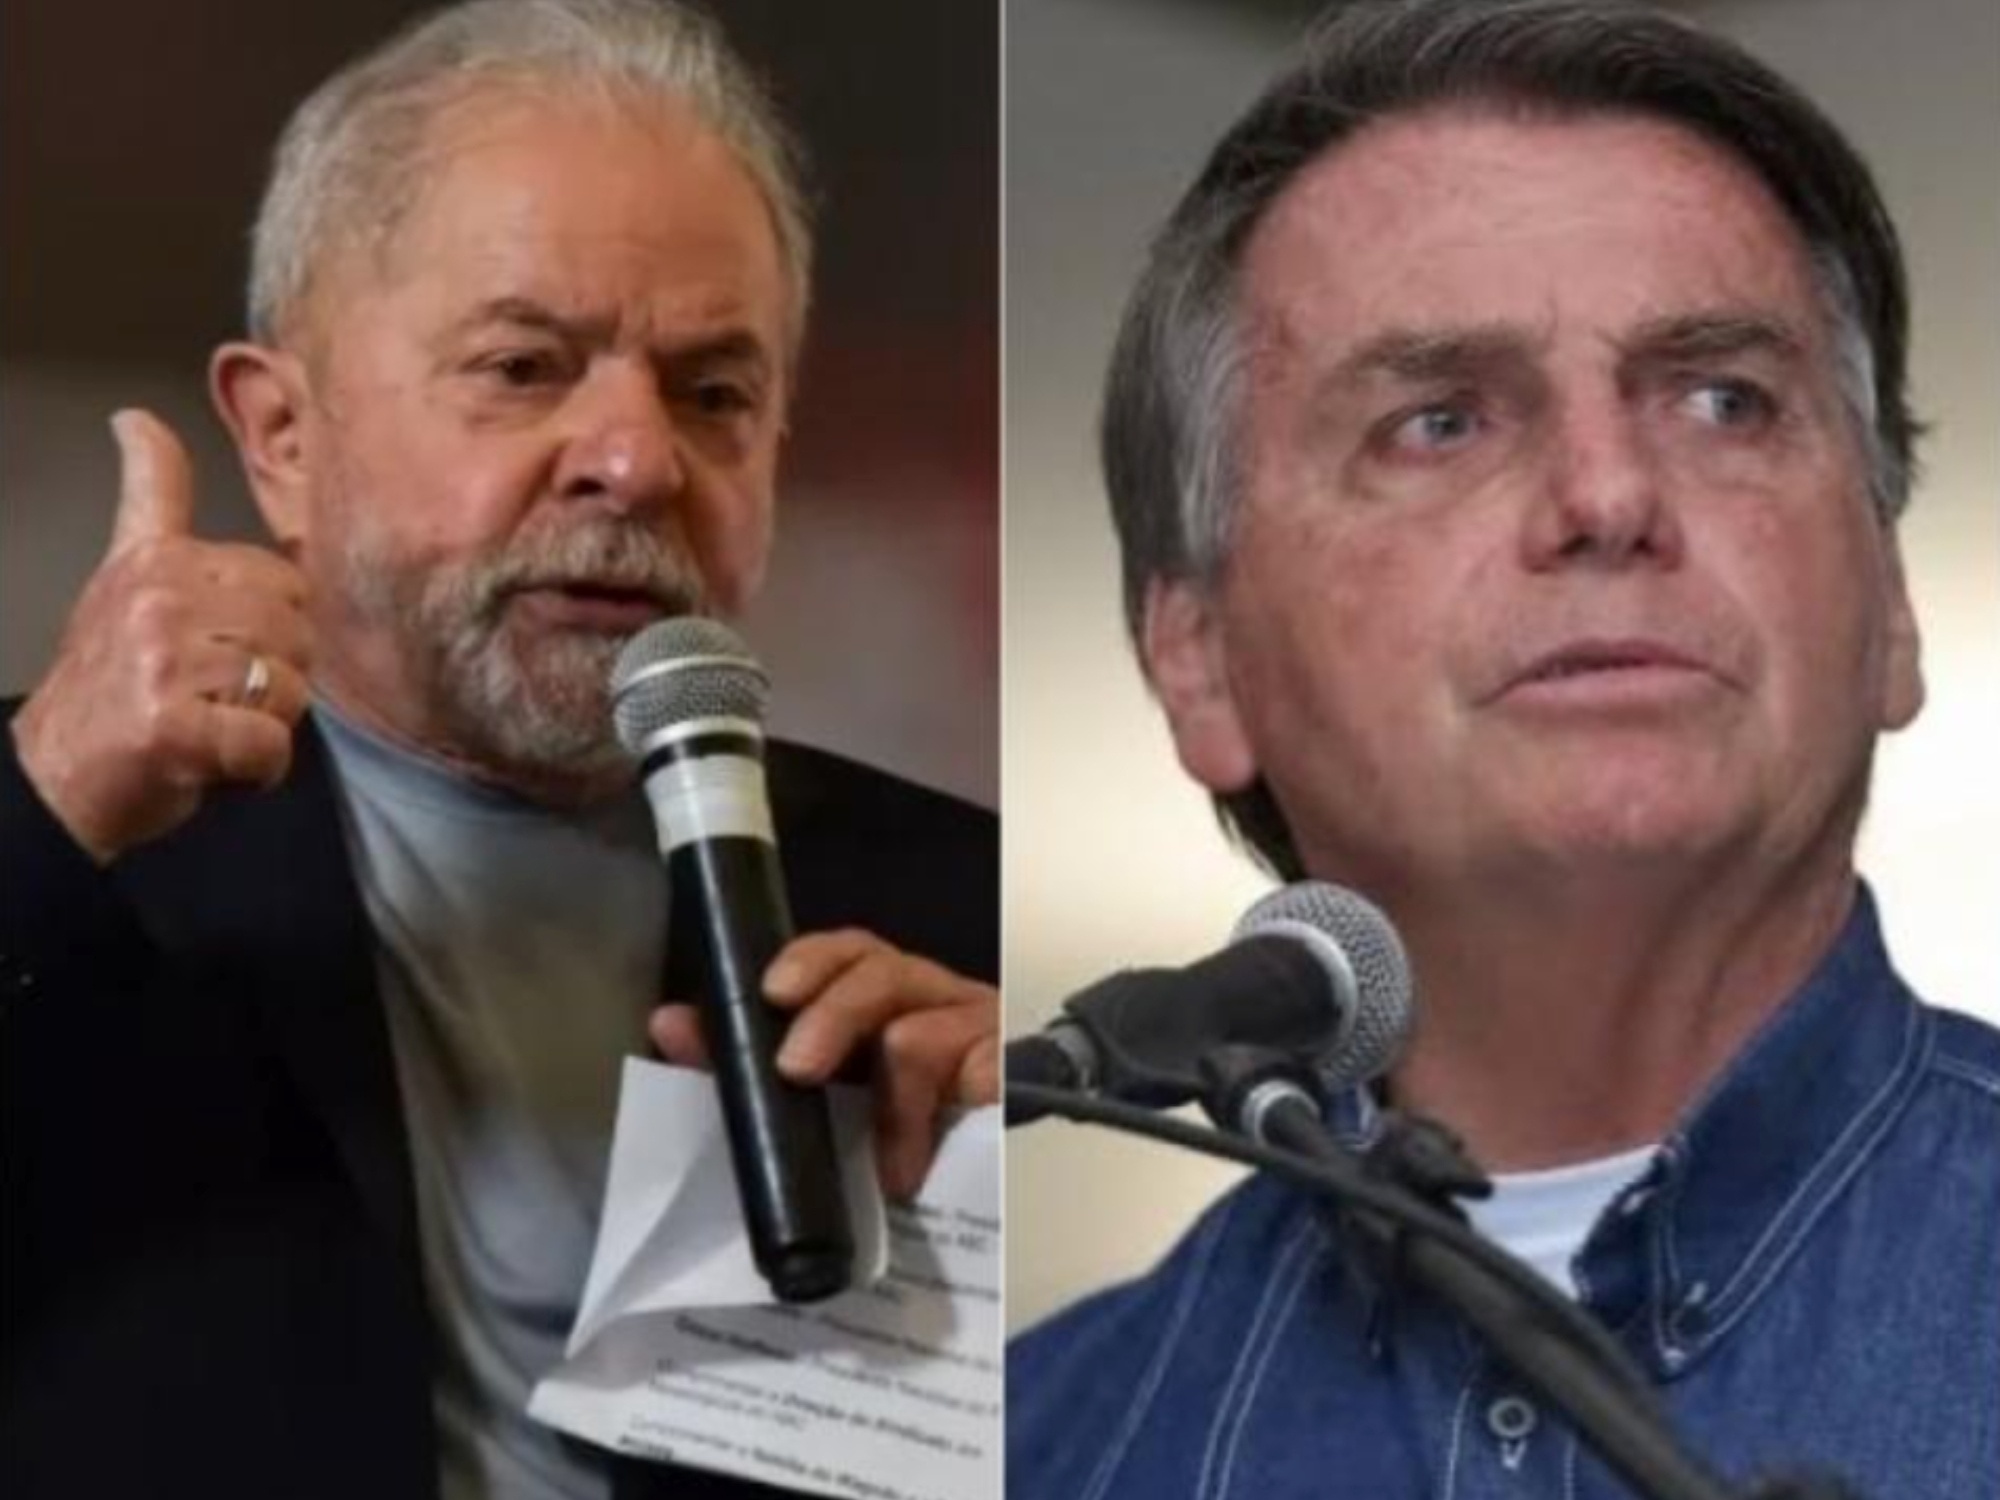 Eleições podem bater recorde de debates, mas com fuga de líderes Lula e Bolsonaro 